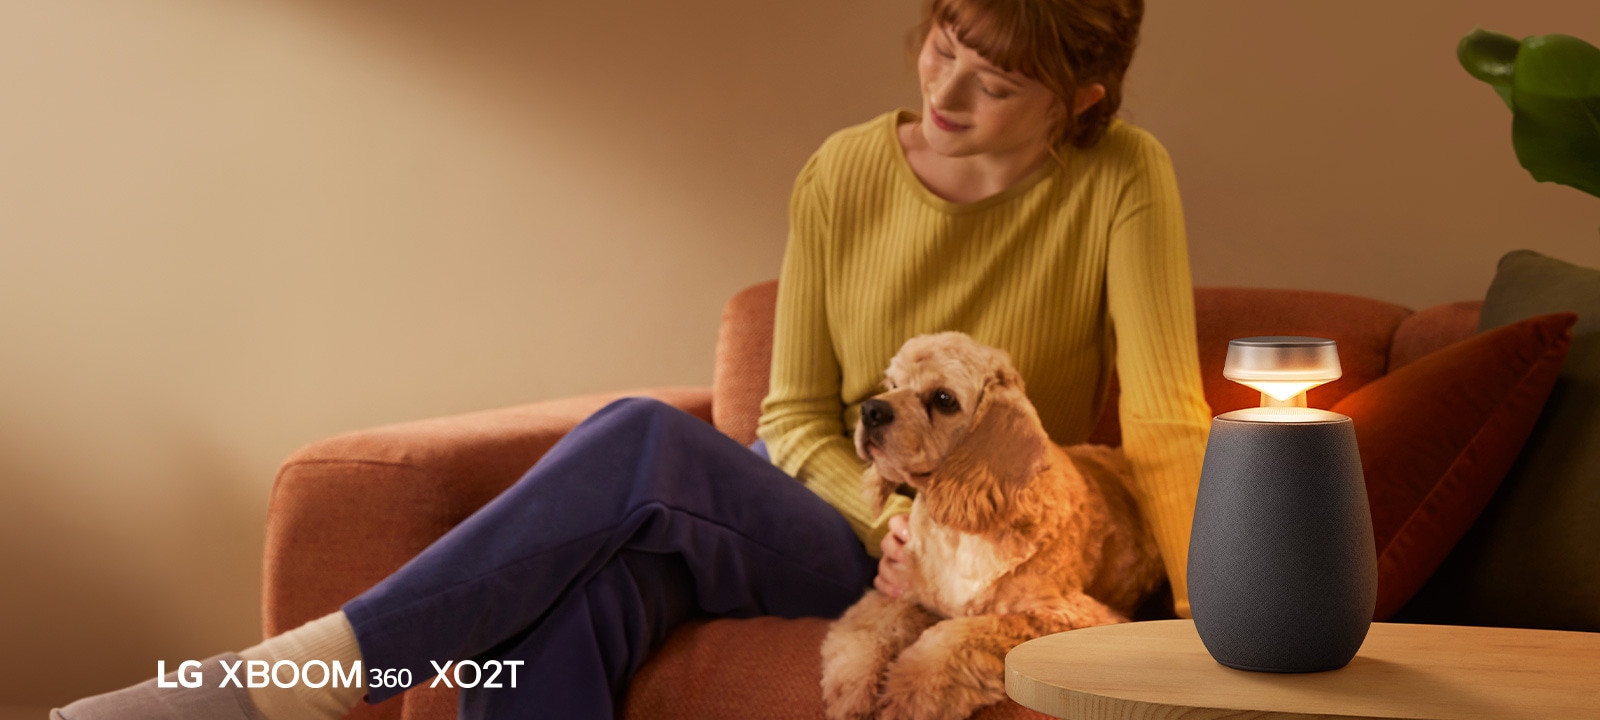 Sieviete sēž uz dīvāna ar suni, klausoties mūziku ar LG XBOOM 360 XO2T.